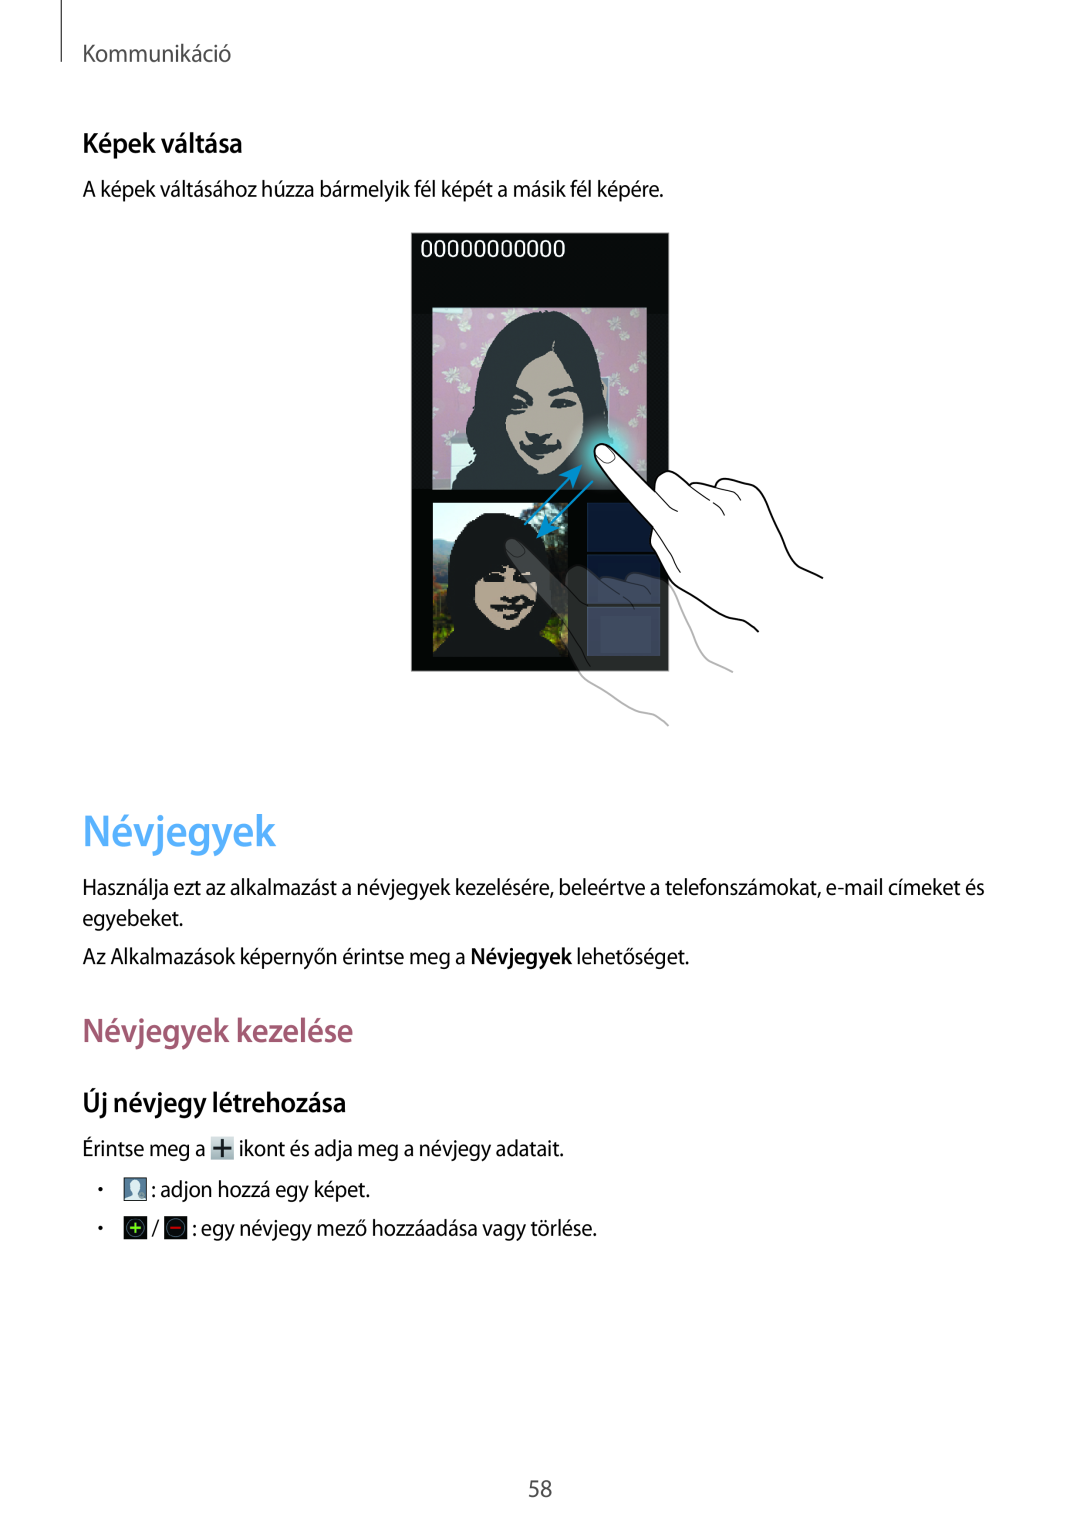 Samsung GT-N7100TADORG, GT-N7100RWDXEO manual Névjegyek kezelése, Képek váltása, Új névjegy létrehozása, Kommunikáció 